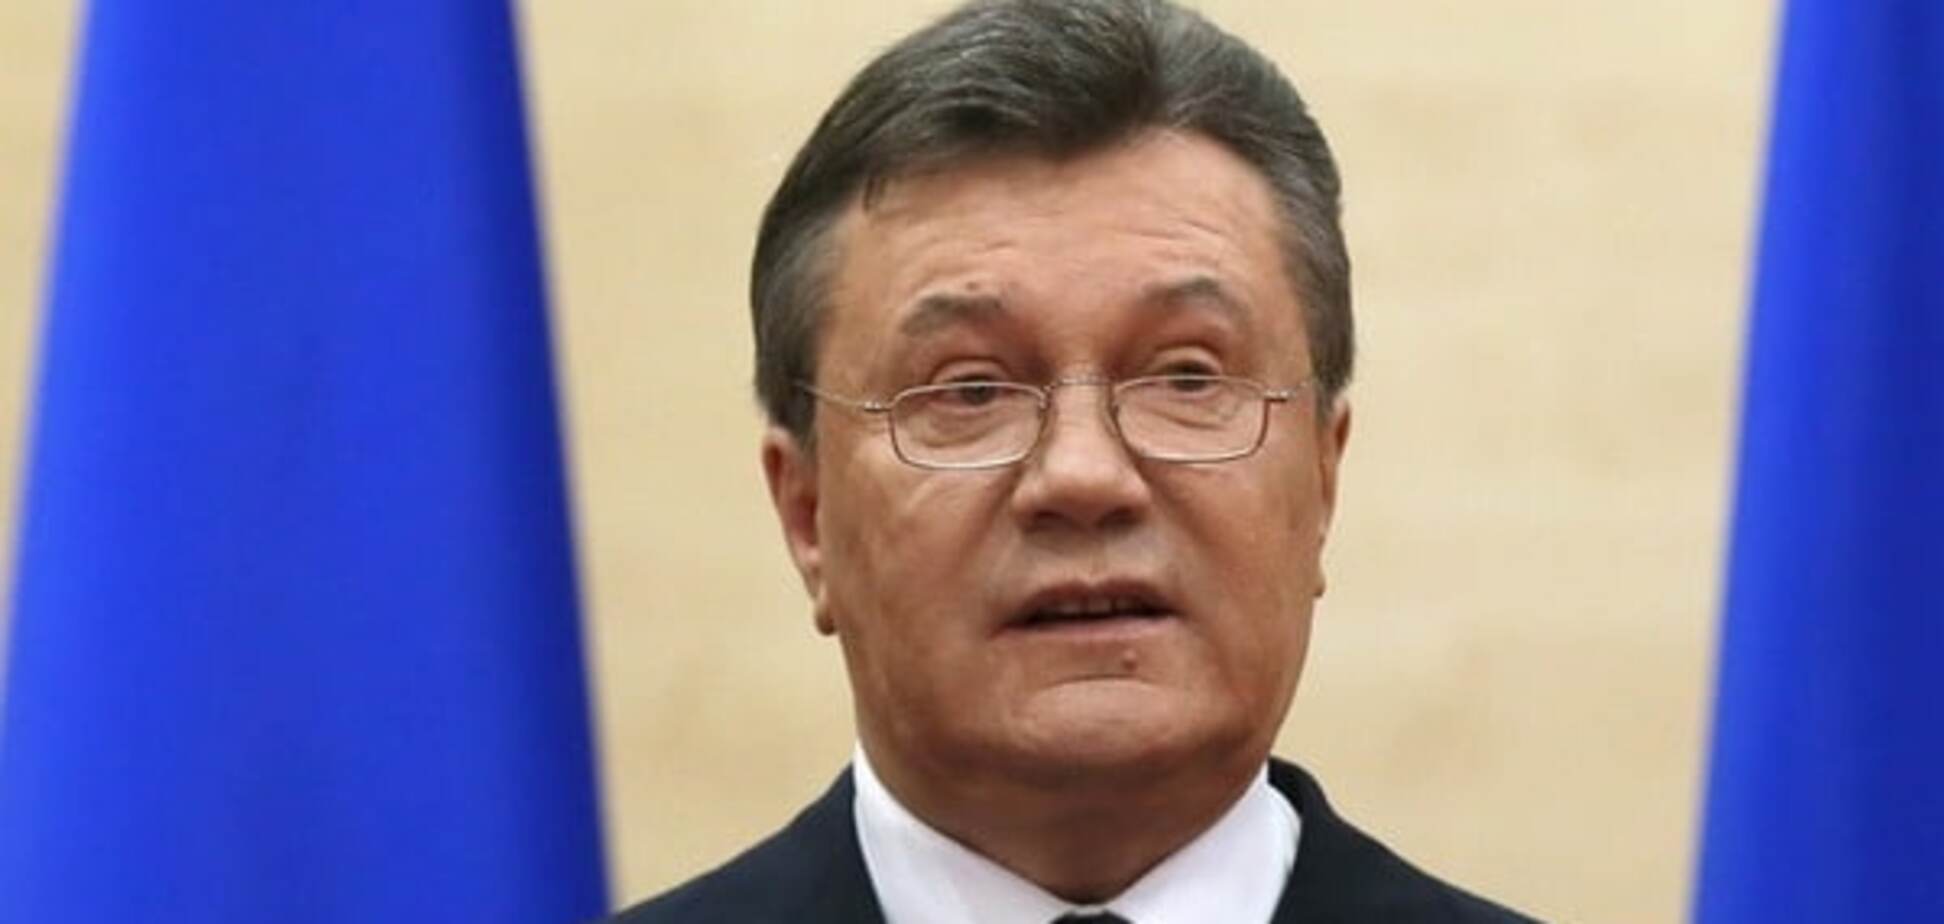 Под знаком бесконечного краха: Портников расписал, что было бы с экономикой, если бы Янукович остался